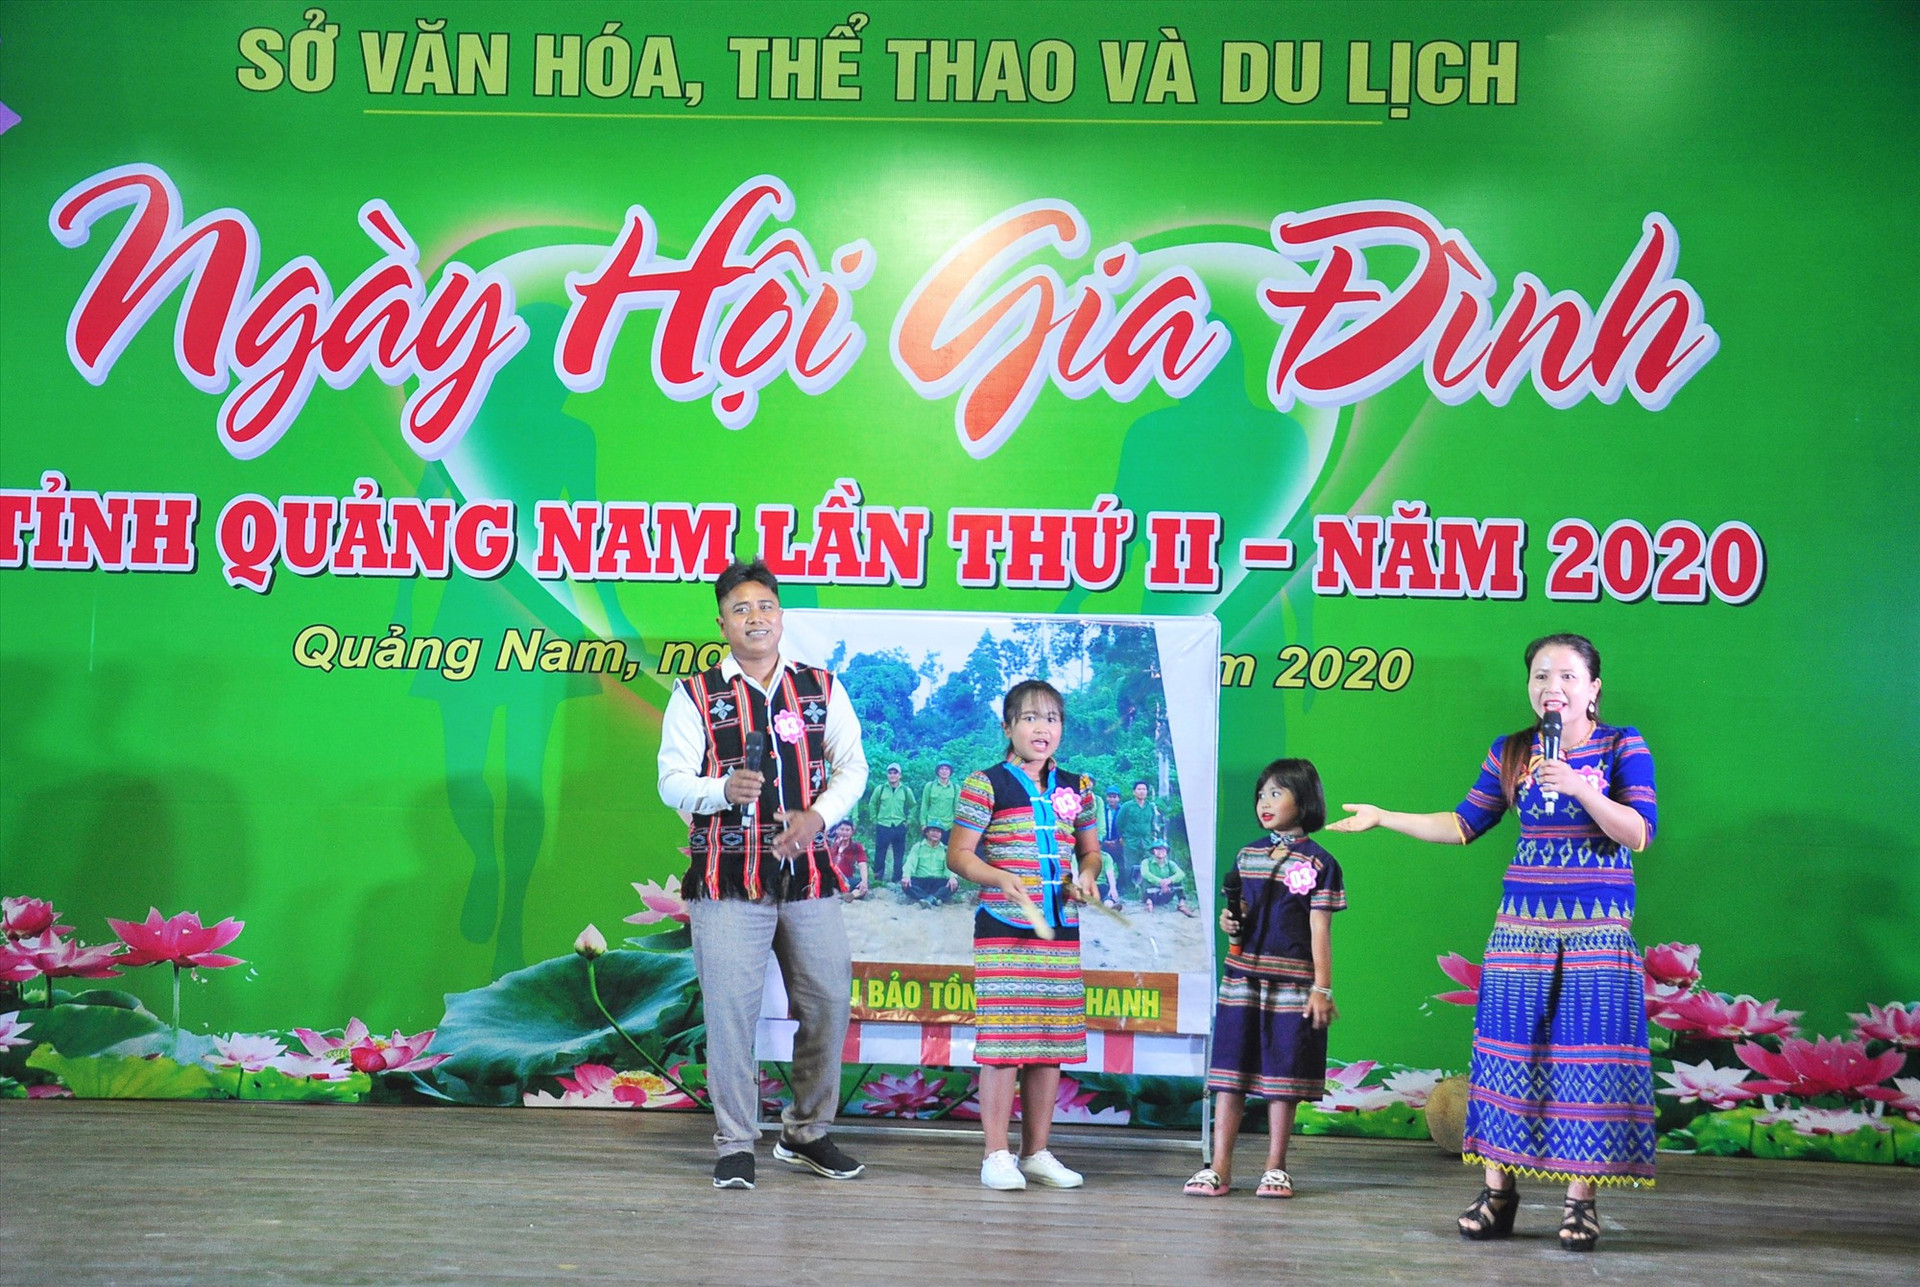 Phần thi văn nghệ của gia đình đến từ huyện Nam Giang tại Ngày hội Gia đình tỉnh Quảng Nam lần thứ II - năm 2020. Ảnh: VINH ANH